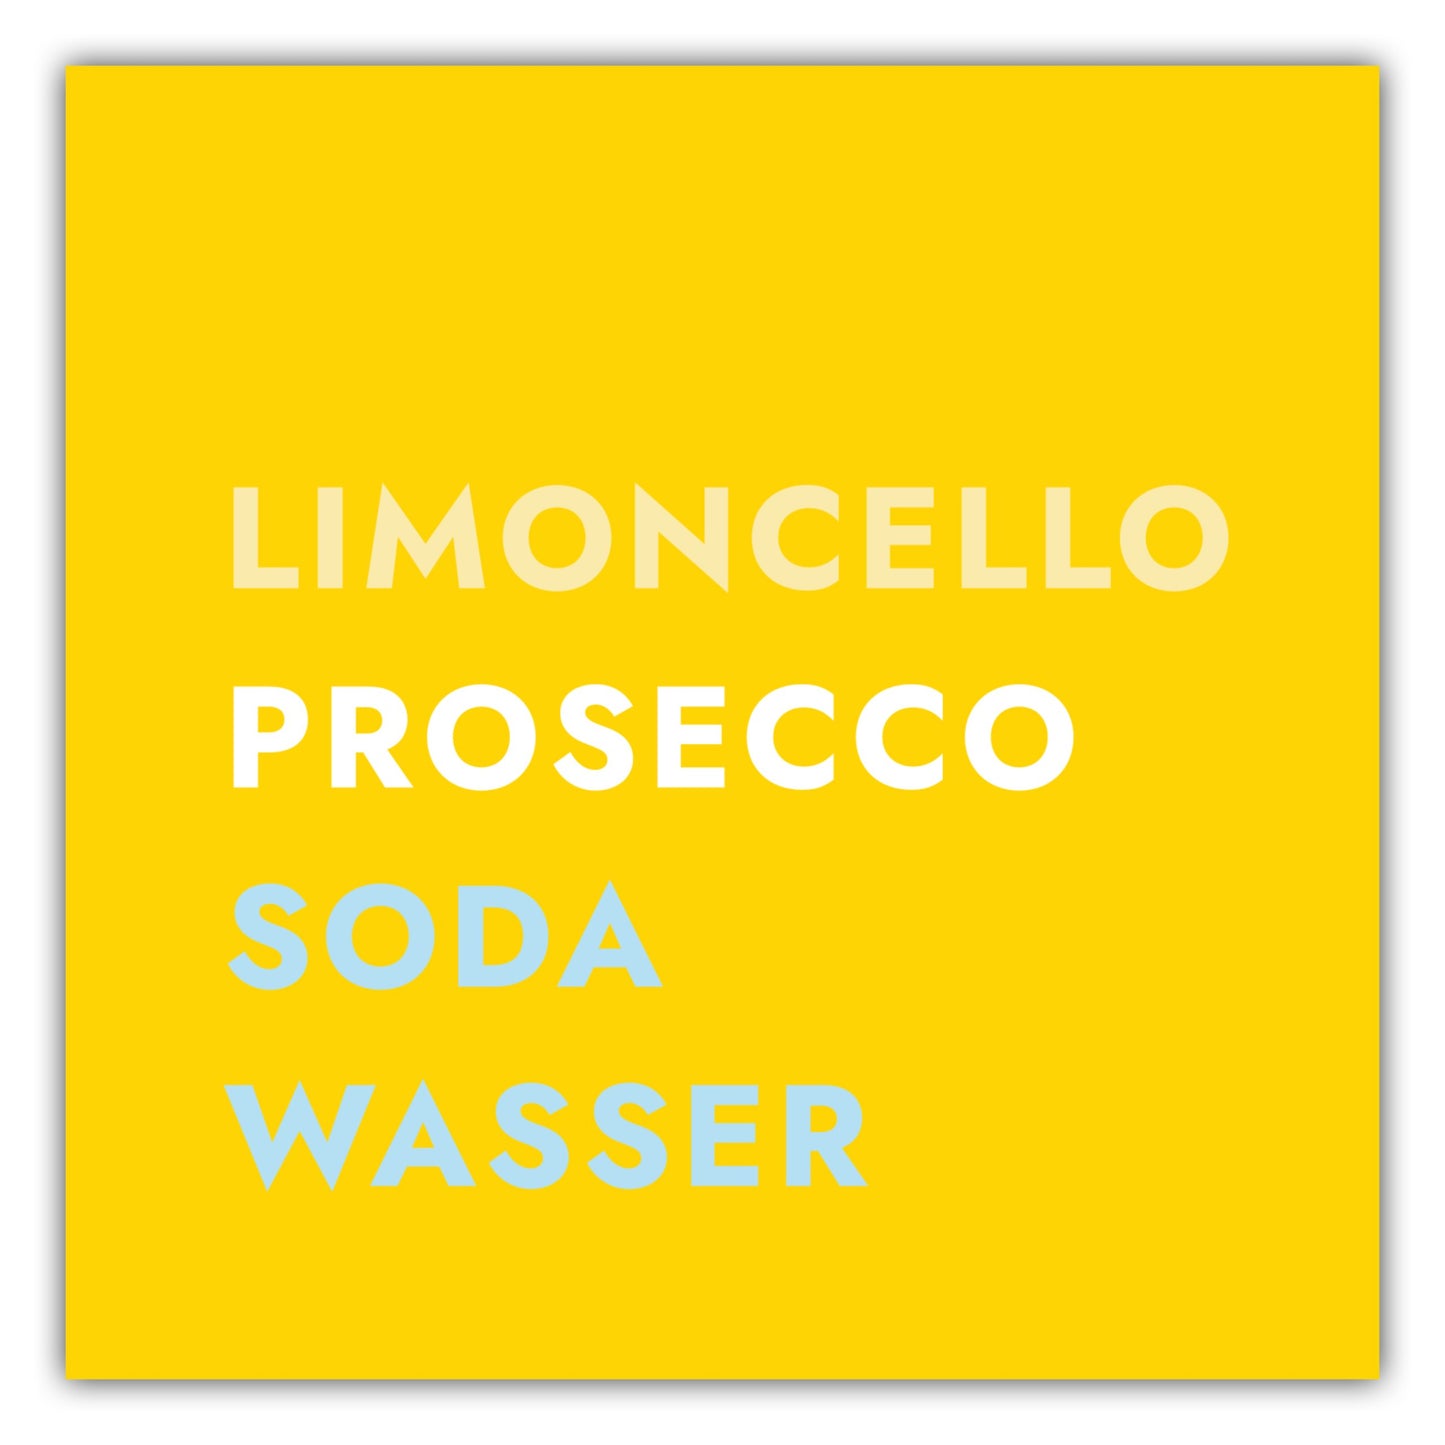 Poster Cocktail Limoncello Spritz - Text